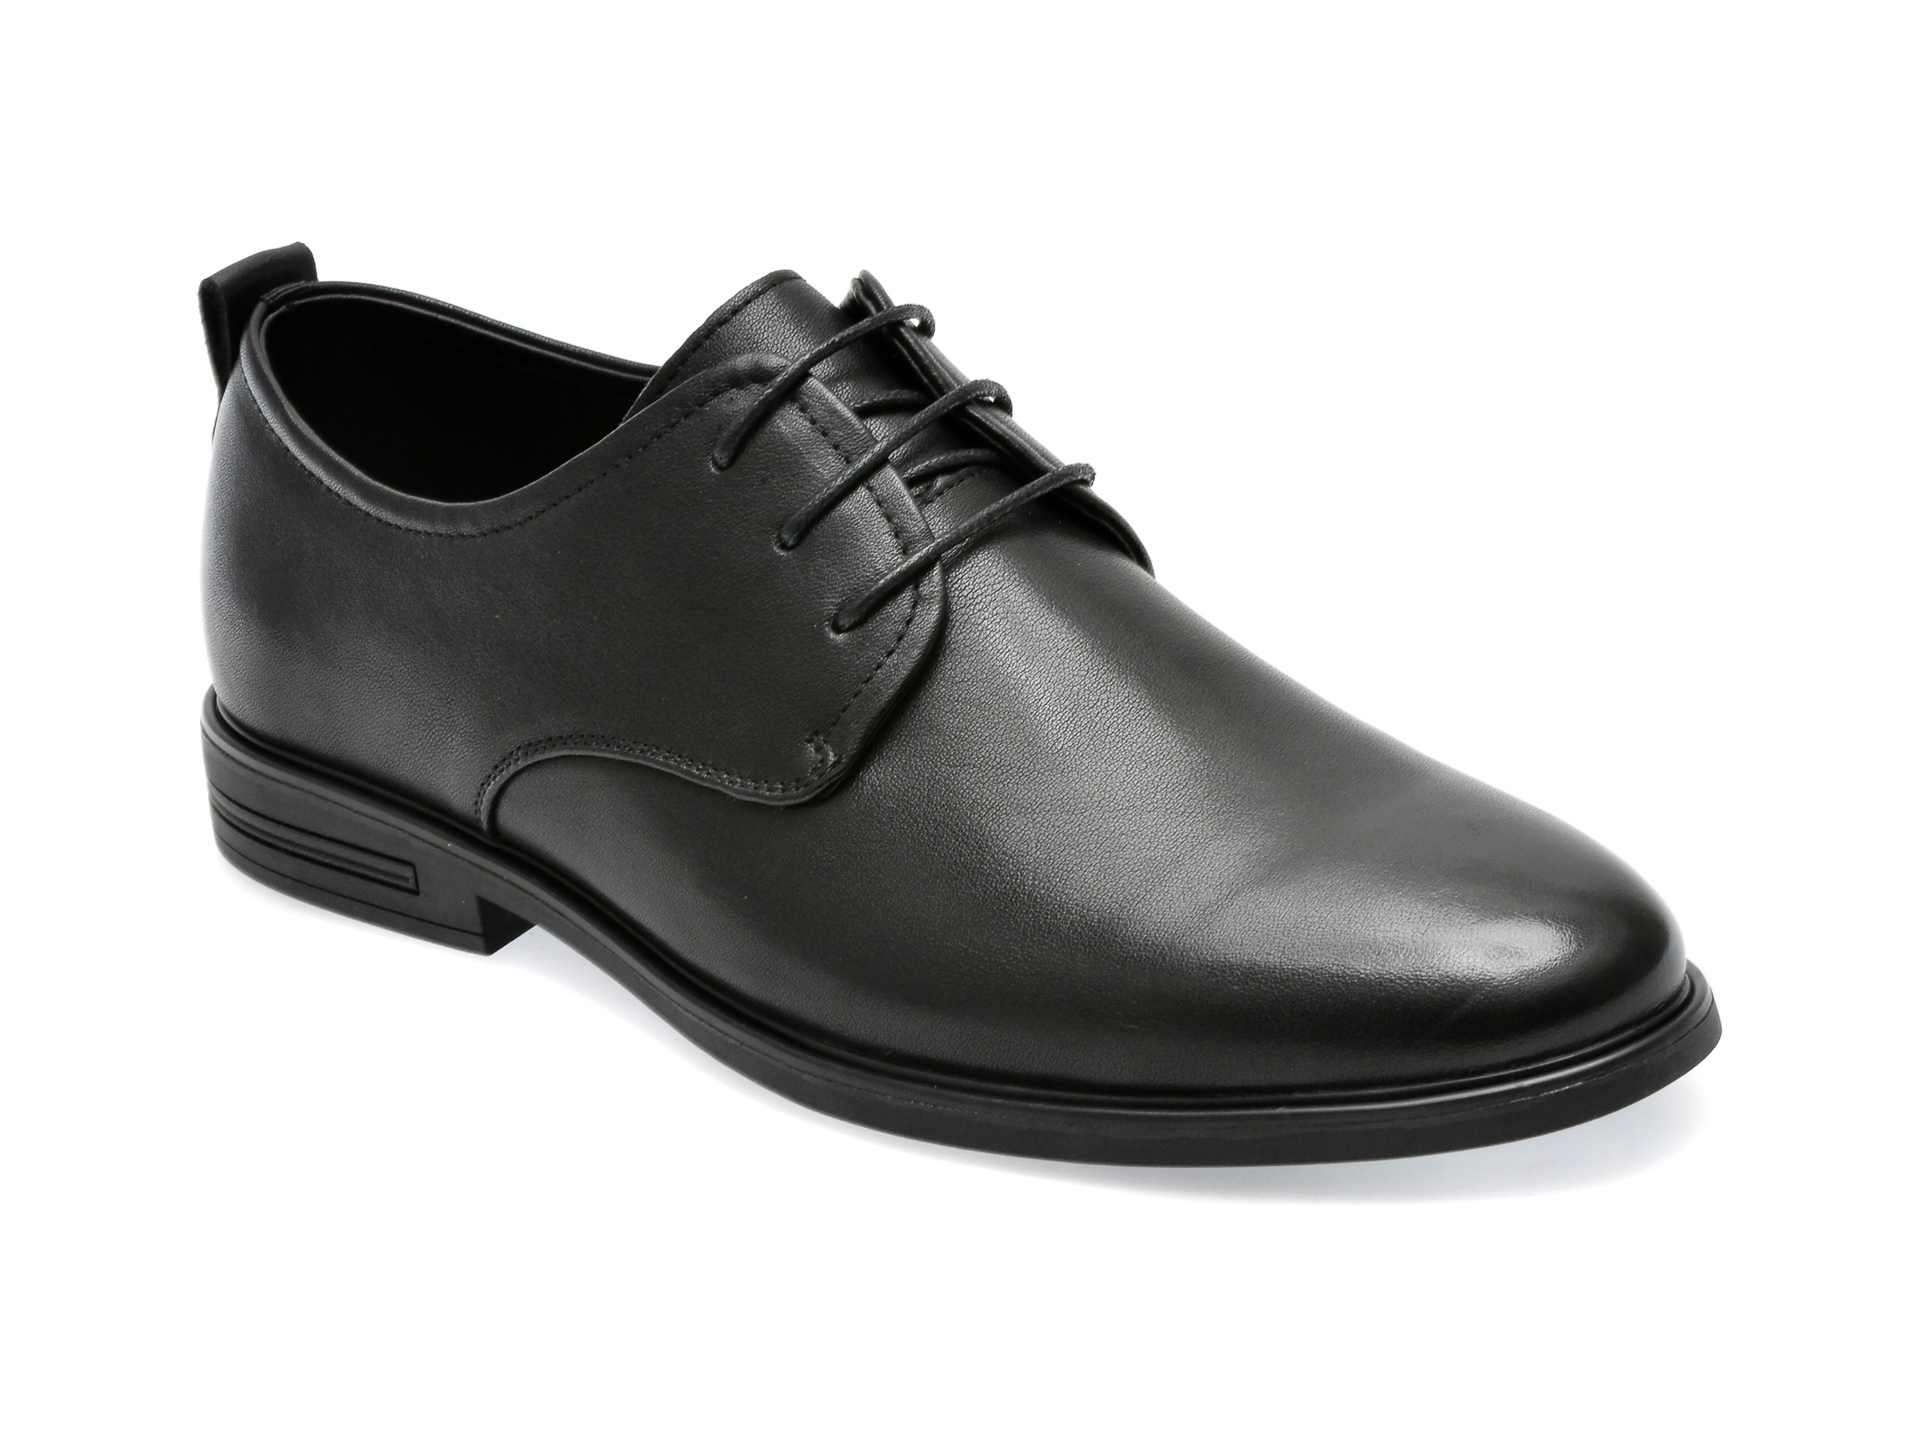 Pantofi OTTER negri, Y99391B, din piele naturala /barbati/pantofi